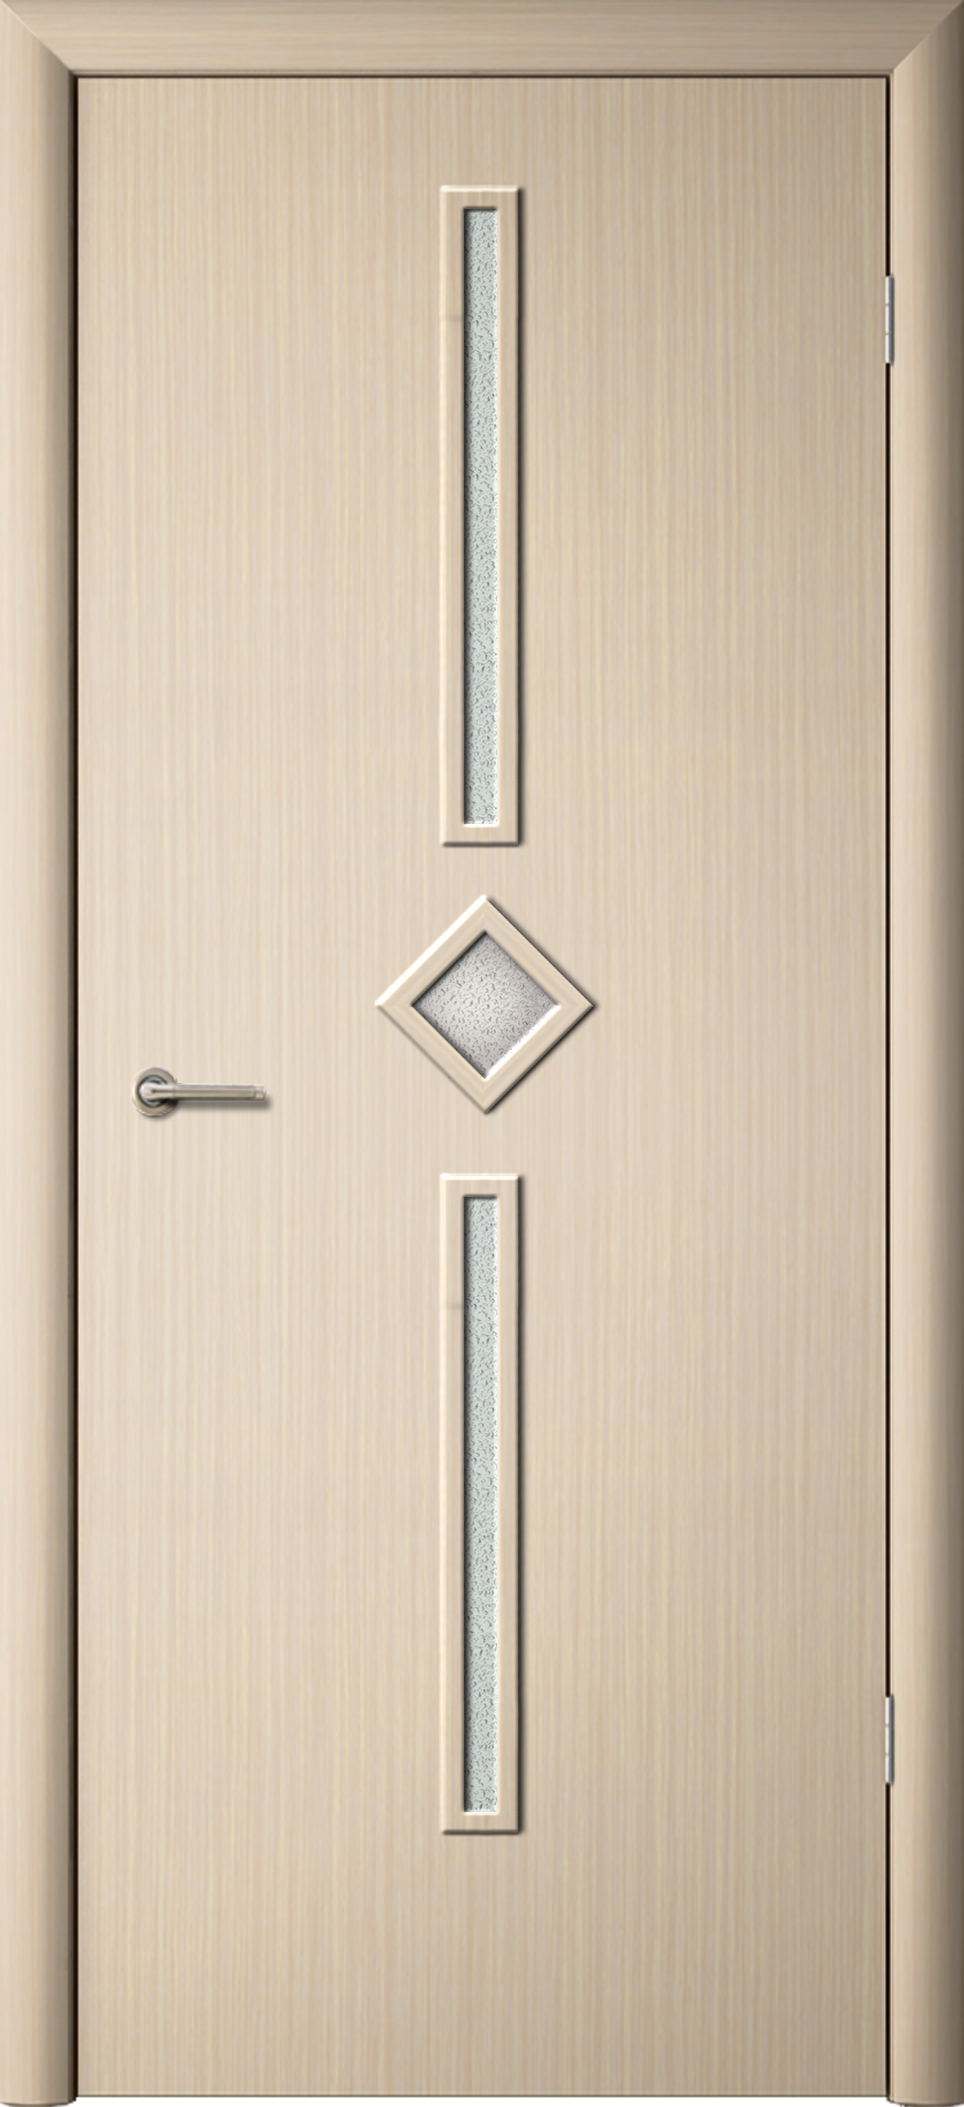 Полотна дверей Диадема, покрытые ламинатной пленкой. Компания Фрегат - Огромное количество вариантов элементов витражей, колеровки - Достойный выбор по фотоизображениям.